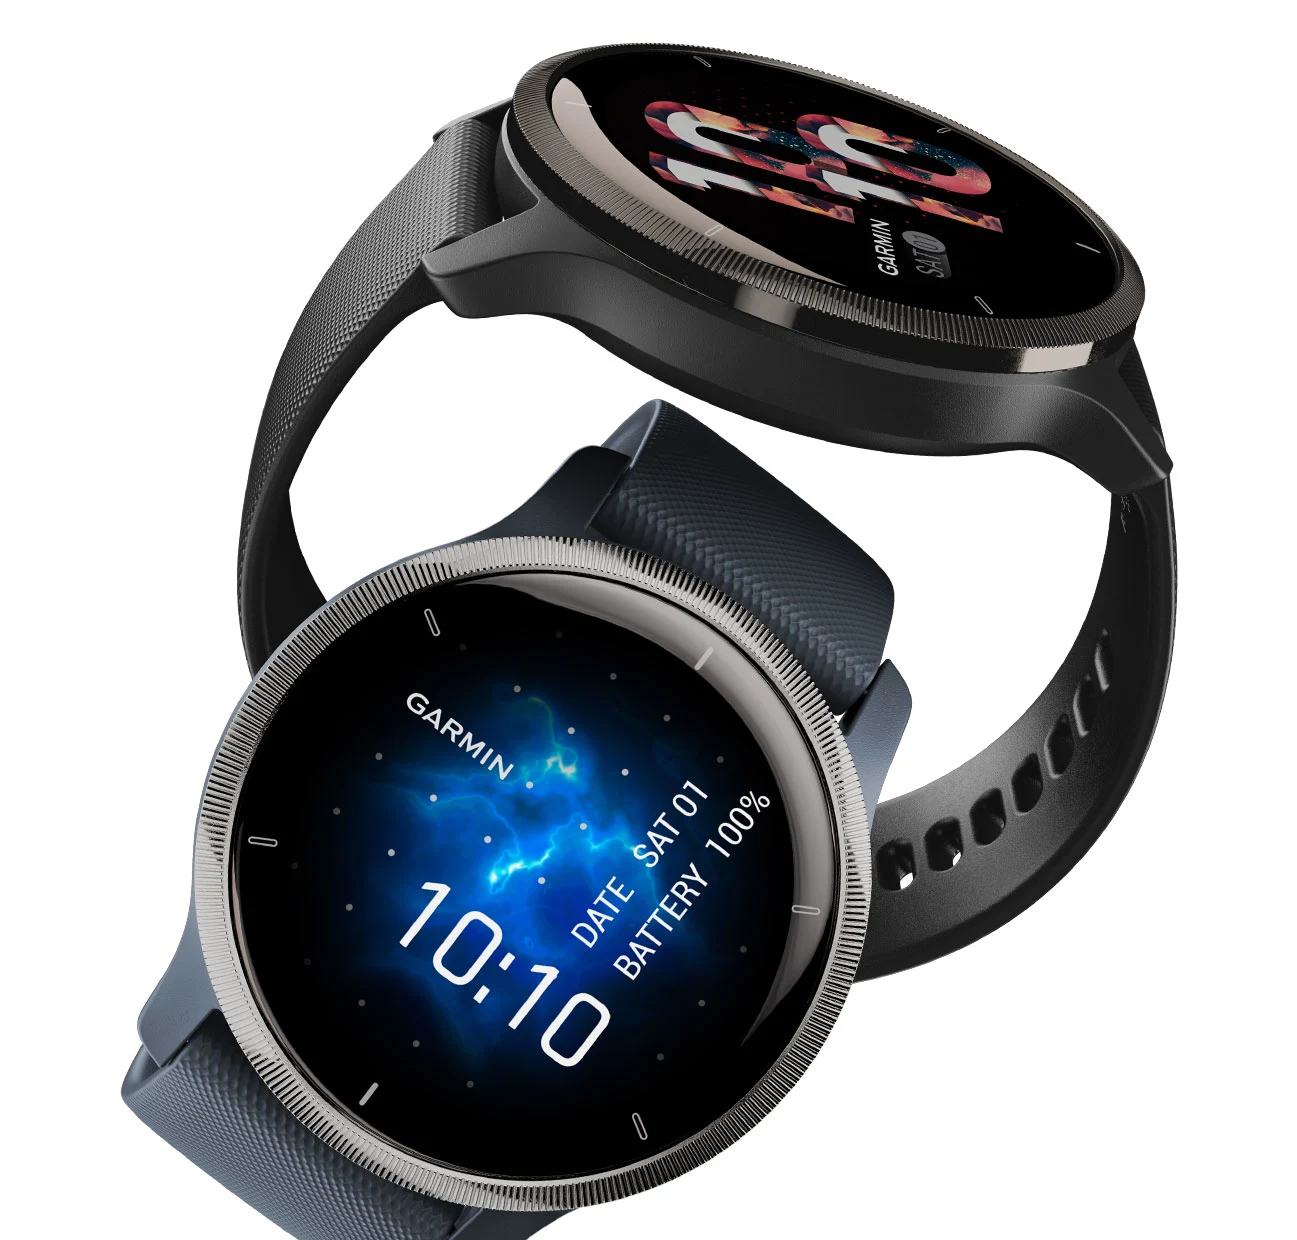 Garmin Beta 13.12 nieuwe update voor Venu 2 smartwatches arriveert